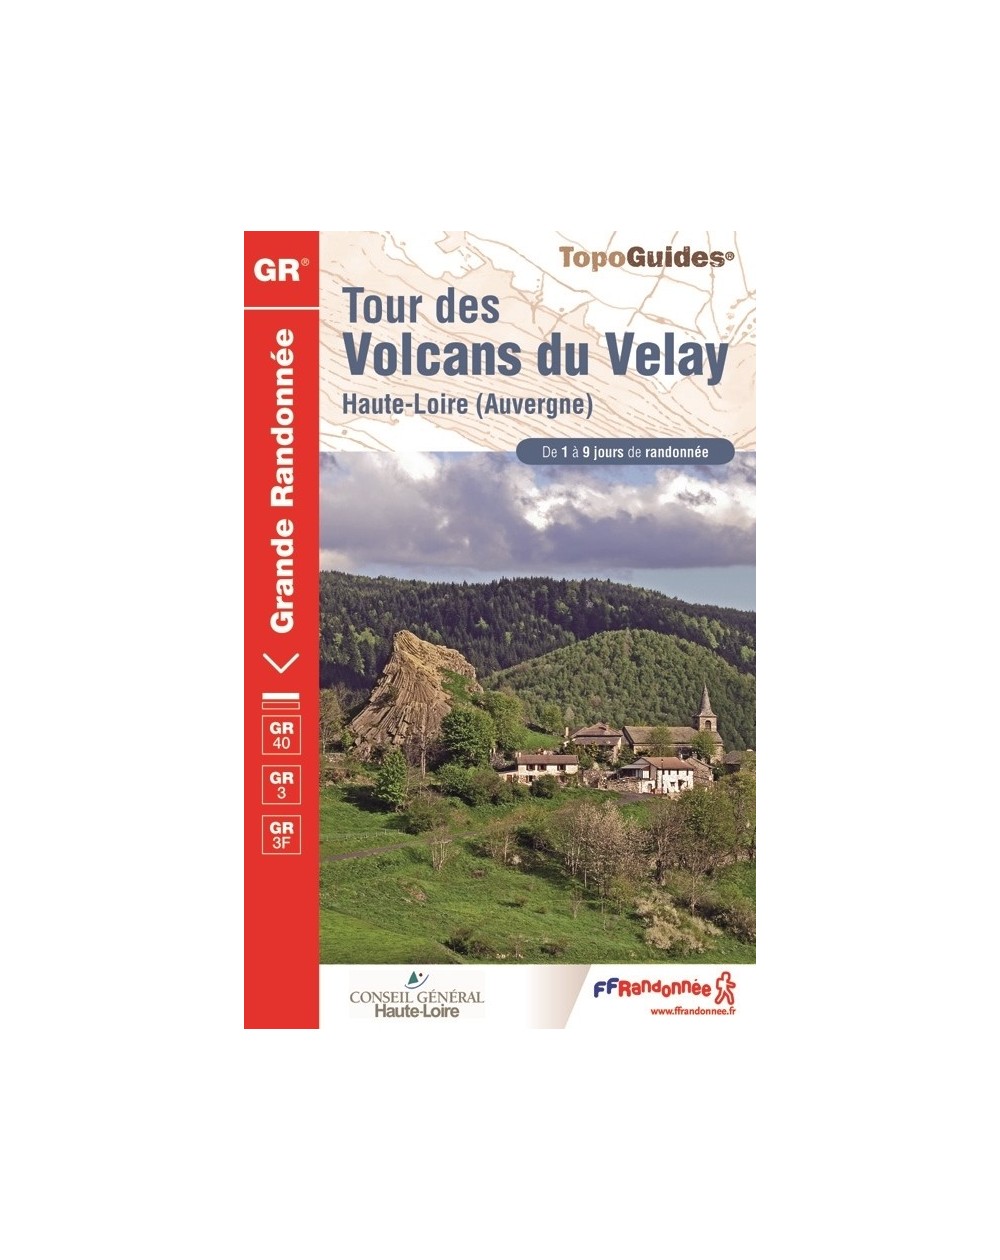 GR40 - Tour des Volcans du Velay - Auvergne | Topoguide FFRP